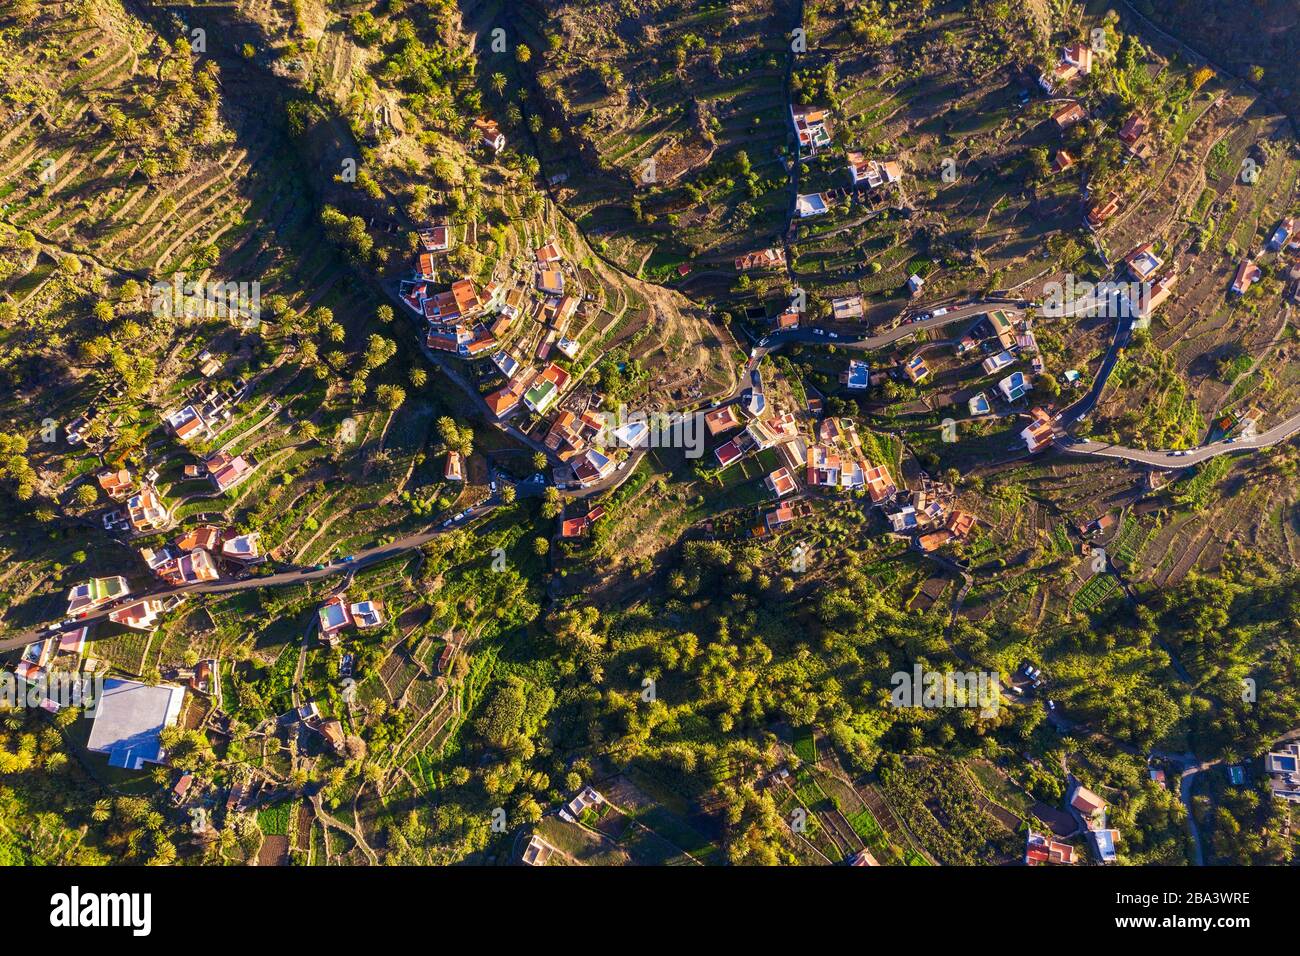 Place Lomo del Balo dans Valle Gran Rey de dessus, vue aérienne, la Gomera, îles Canaries, Espagne Banque D'Images